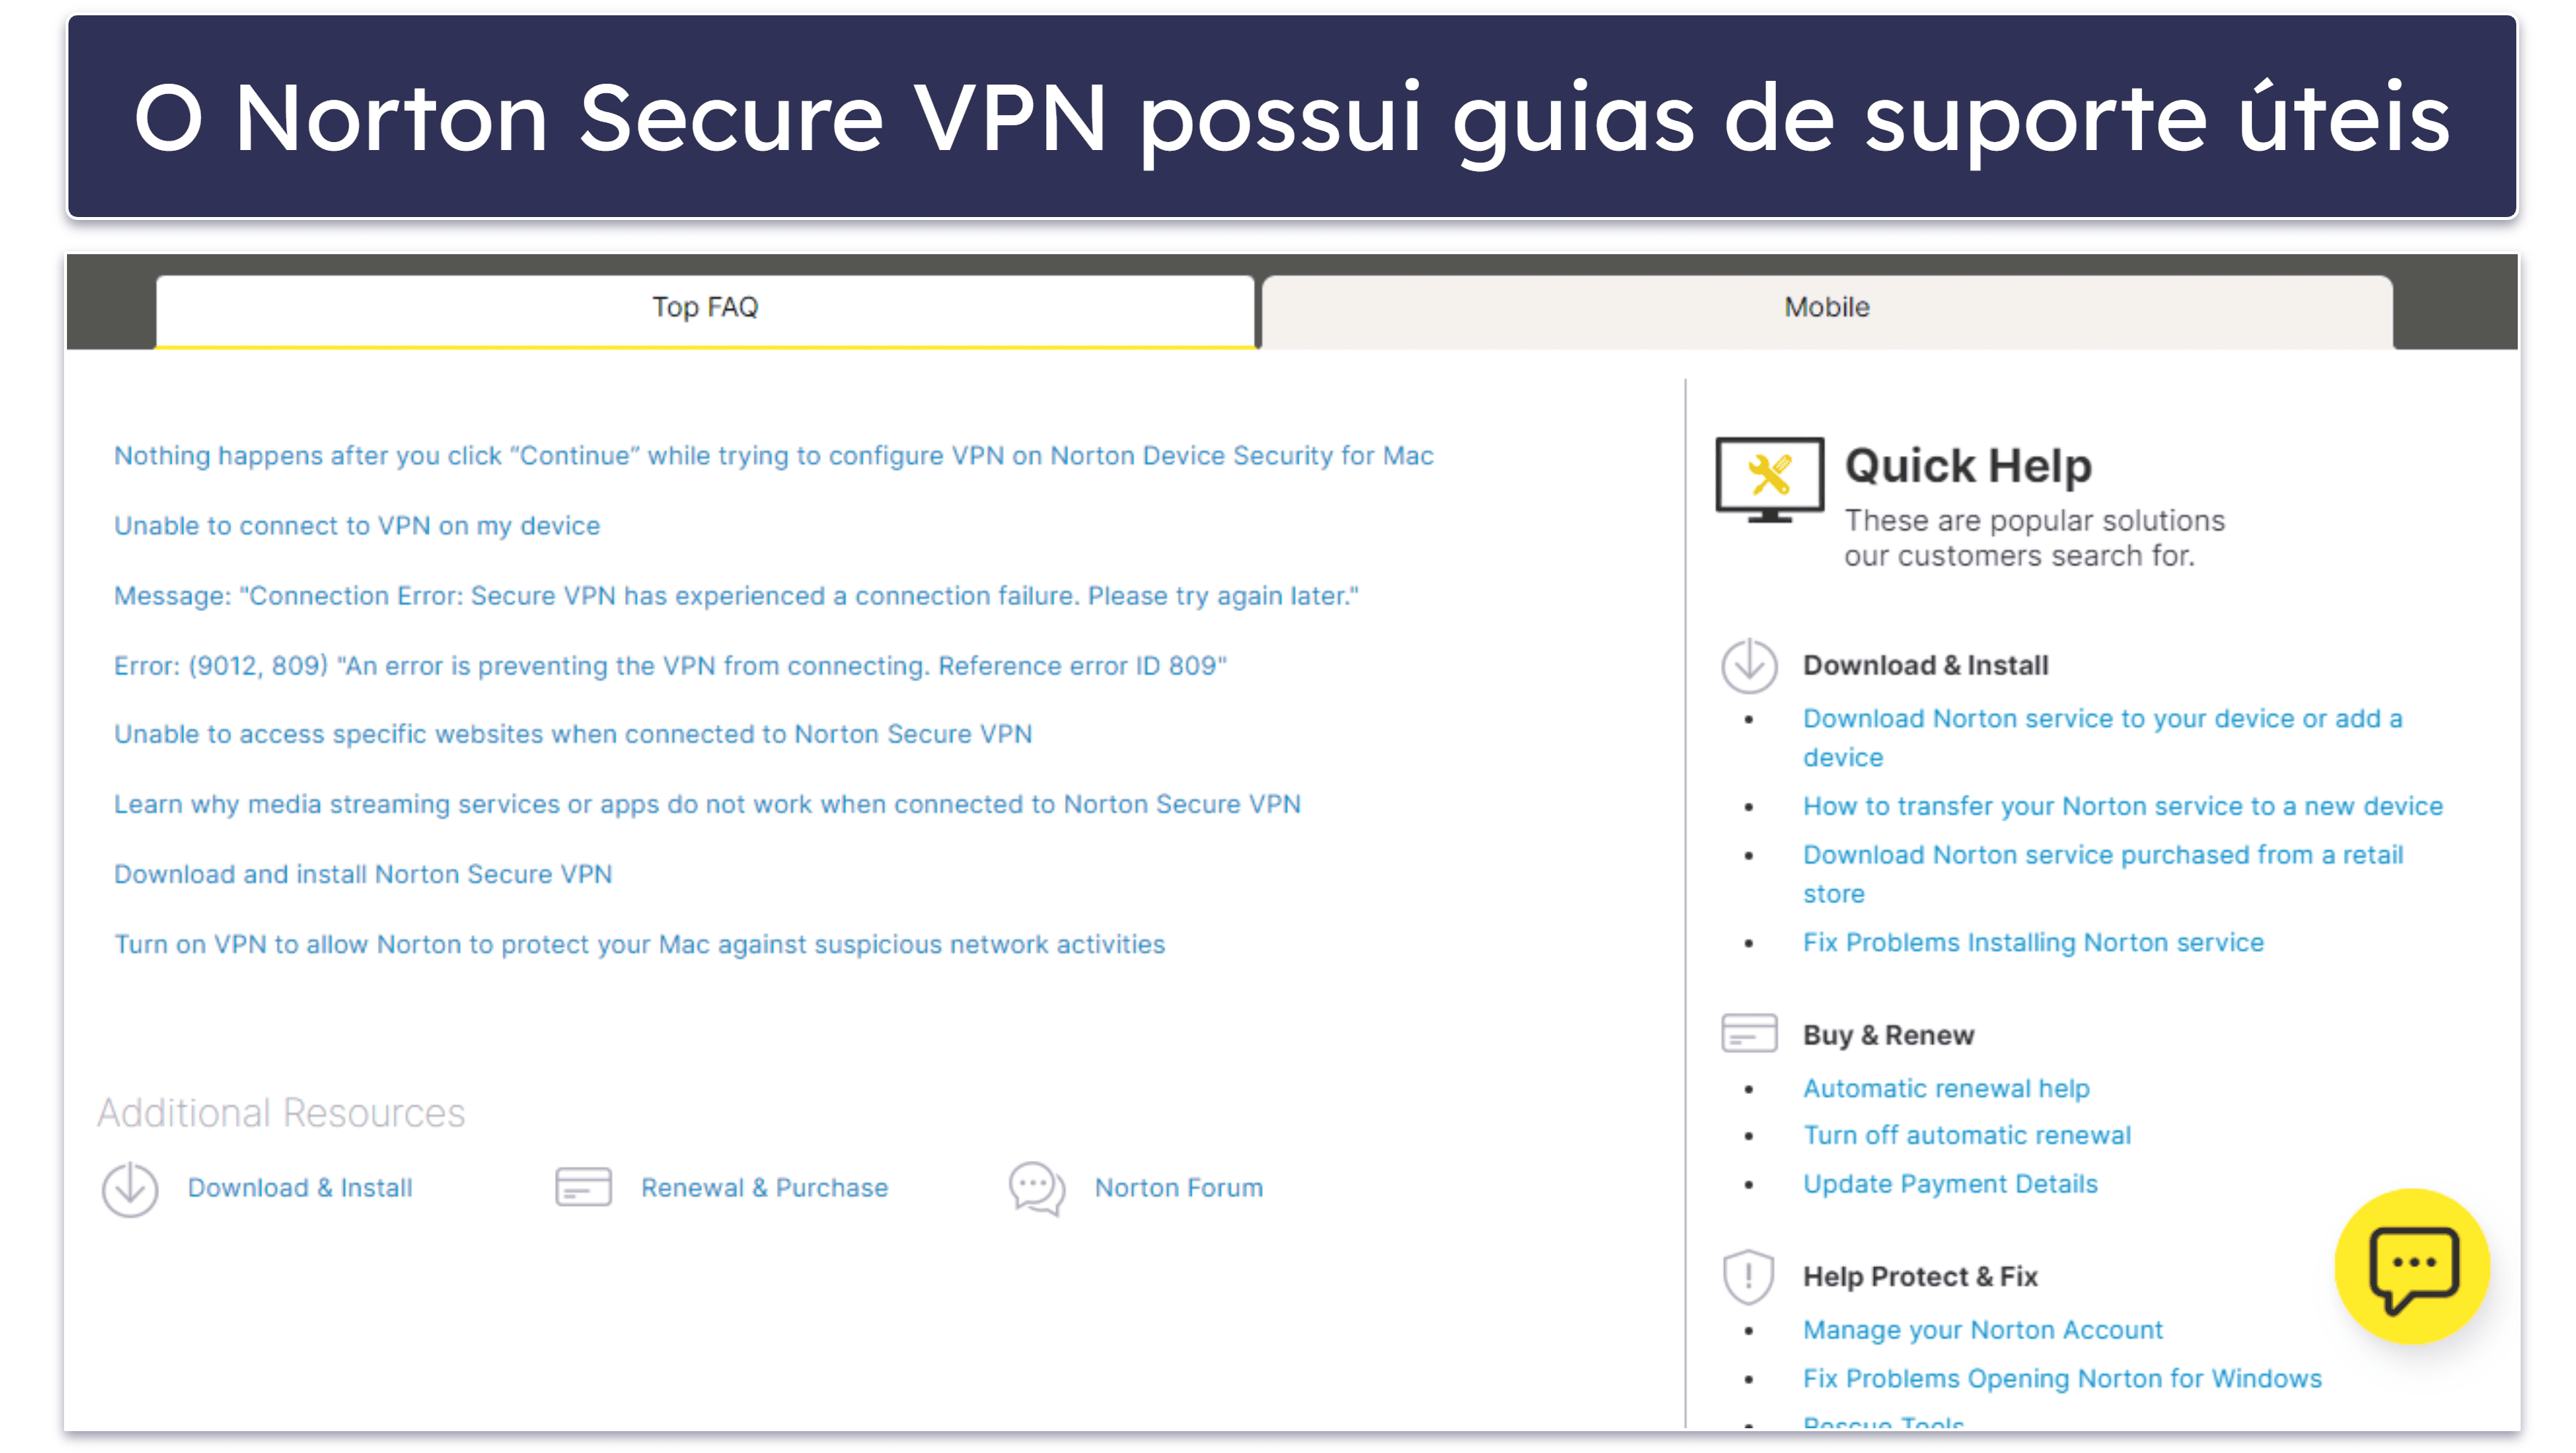 Suporte ao cliente do Norton Secure VPN